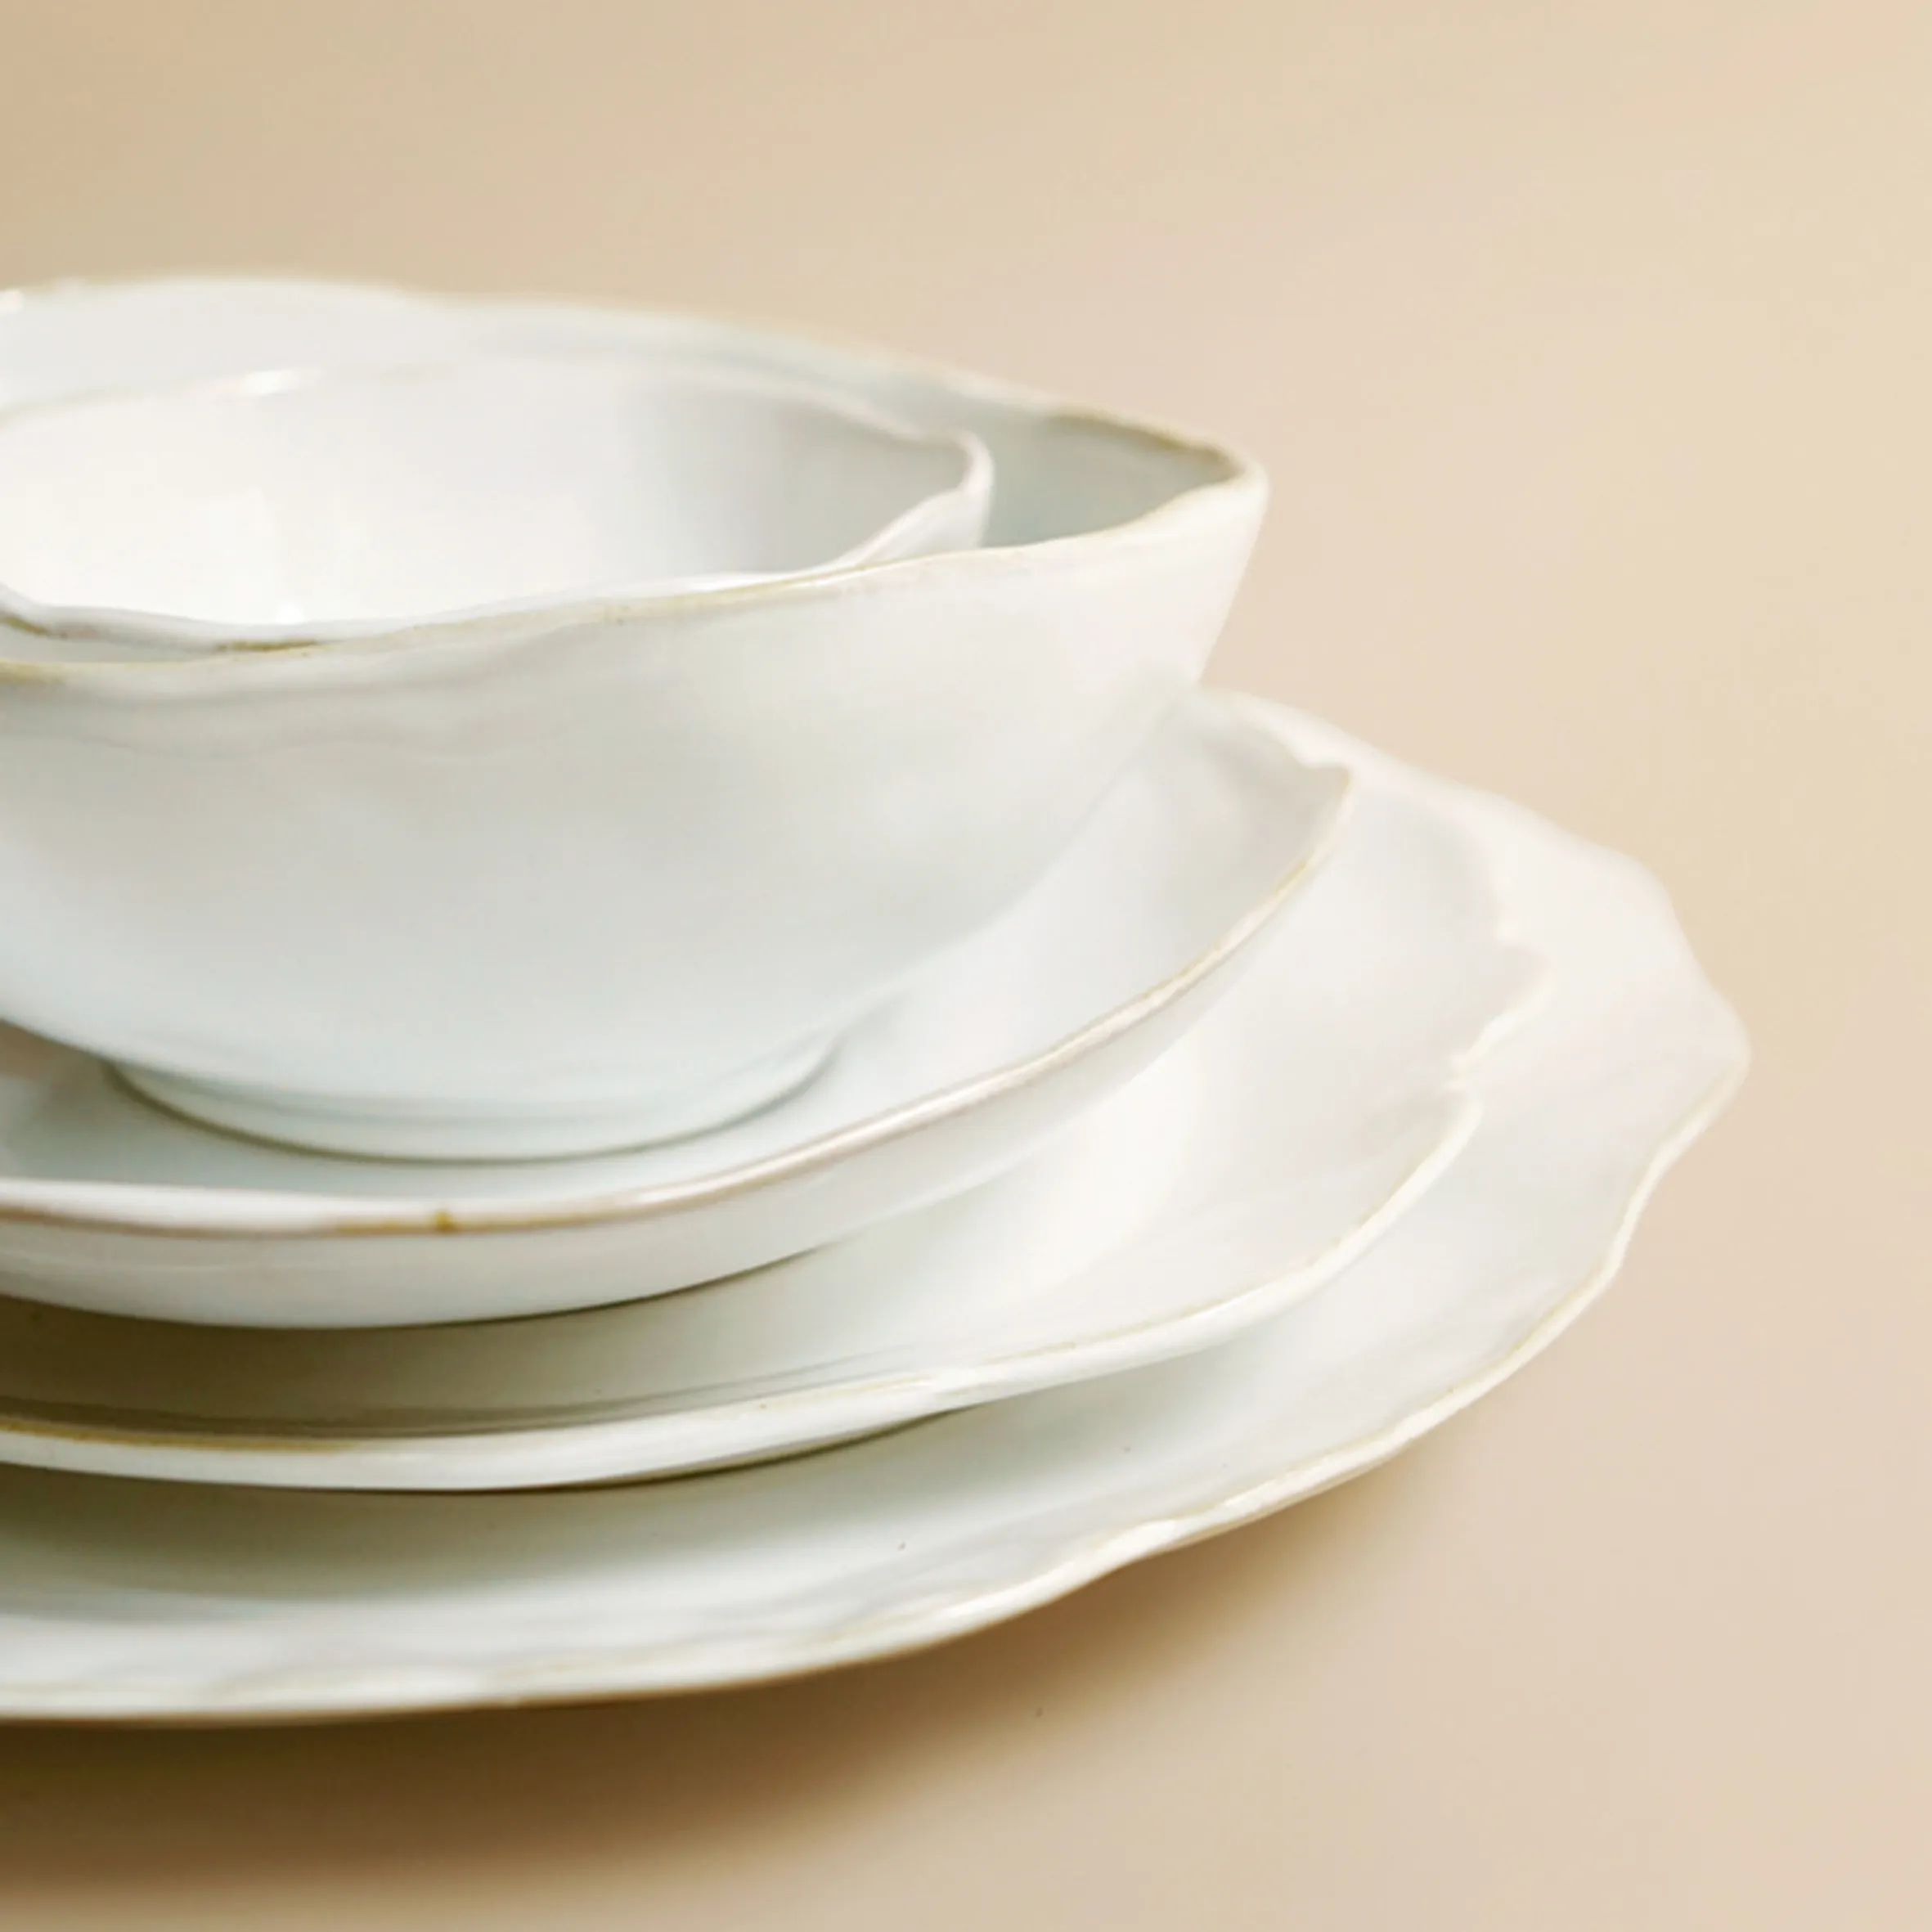 Service de table en céramique en grès, vaisselle en argile naturelle avec glaçage blanc réfléchissant